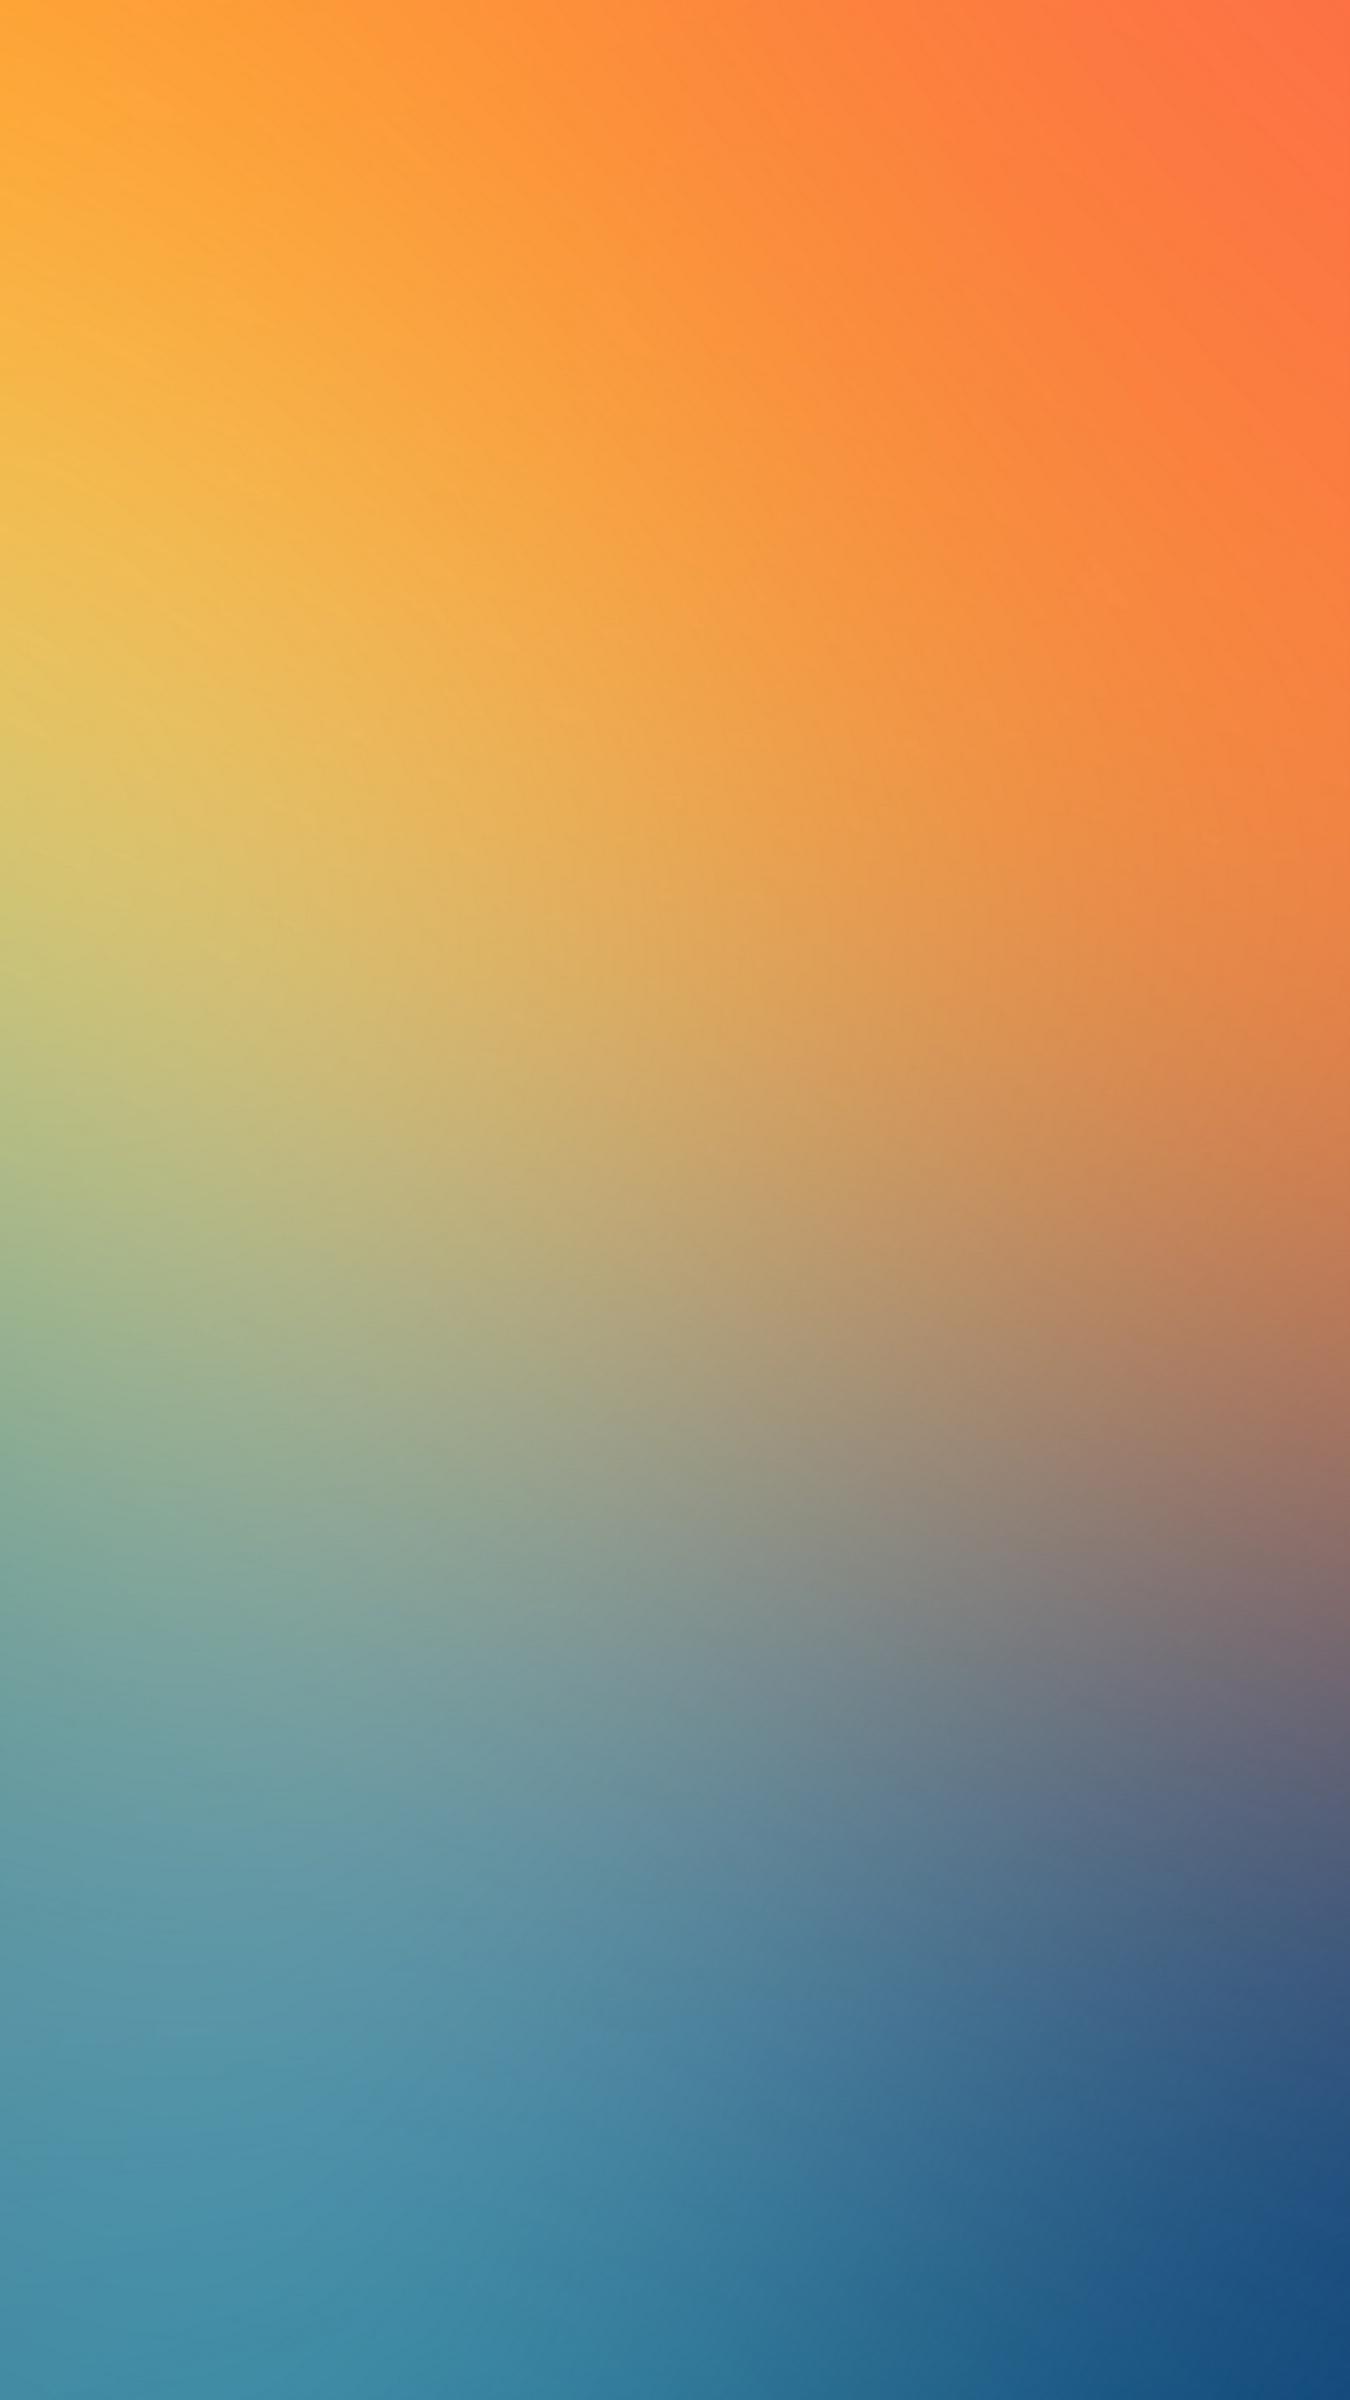 Hình nền gradient với màu cam và vàng sẽ khiến cho màn hình của bạn trở nên lung linh và rực rỡ. Hãy cho phép mình được ngắm nhìn và thư giãn với hình ảnh đẹp như mơ này.